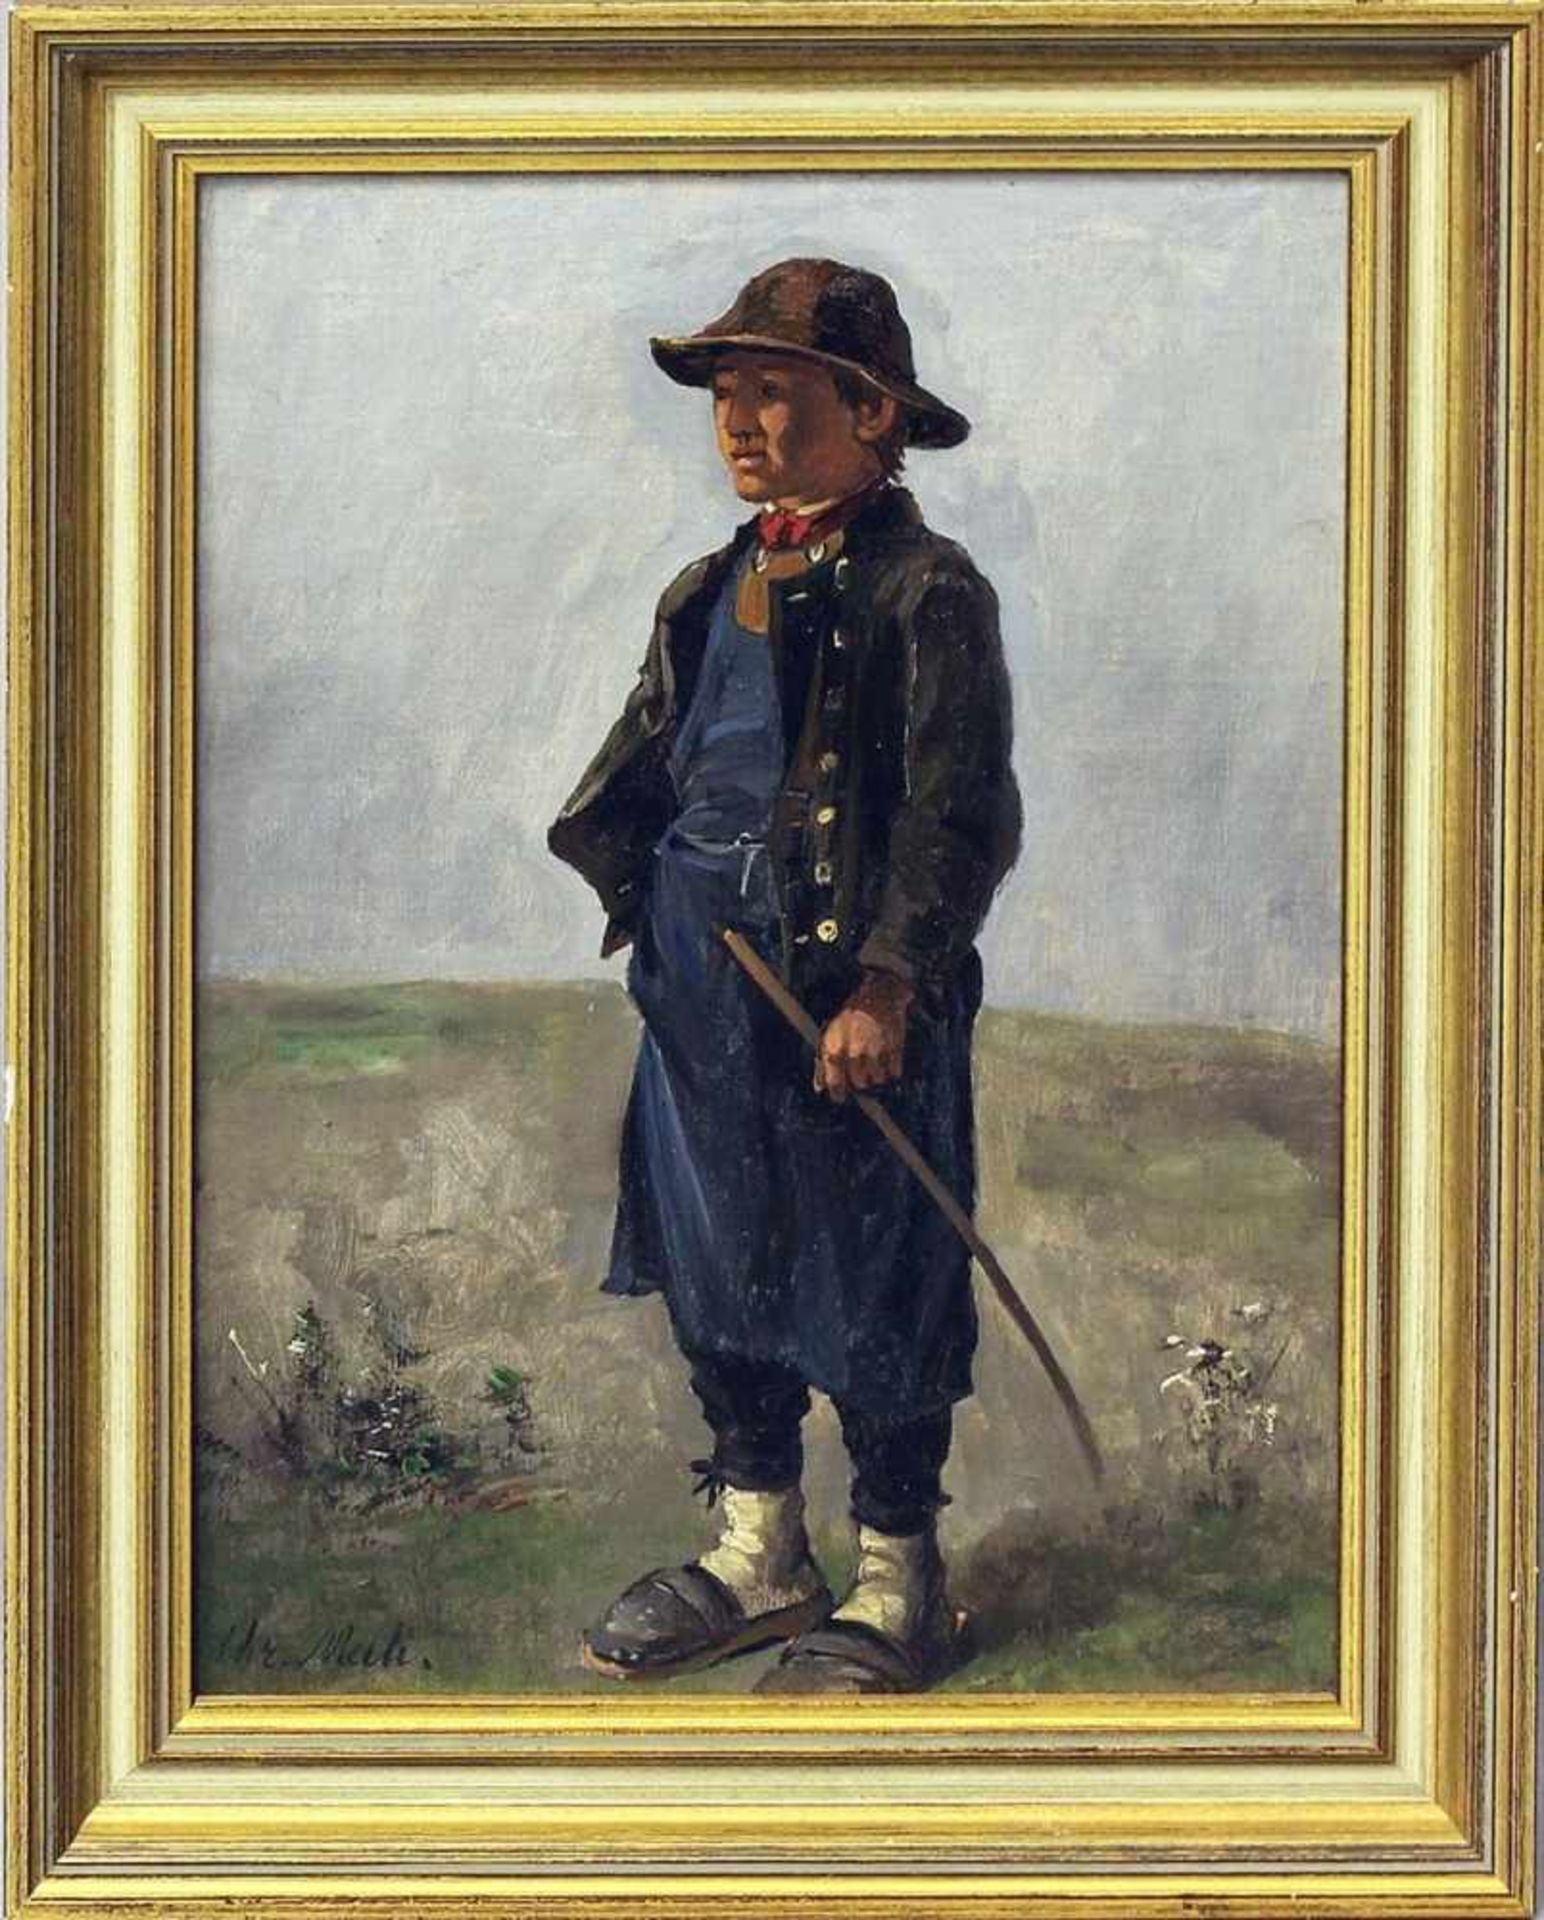 Mali, Christian Friedrich (1832 Darthuizen - München 1906)Studienhafte Darstellung eines jungen